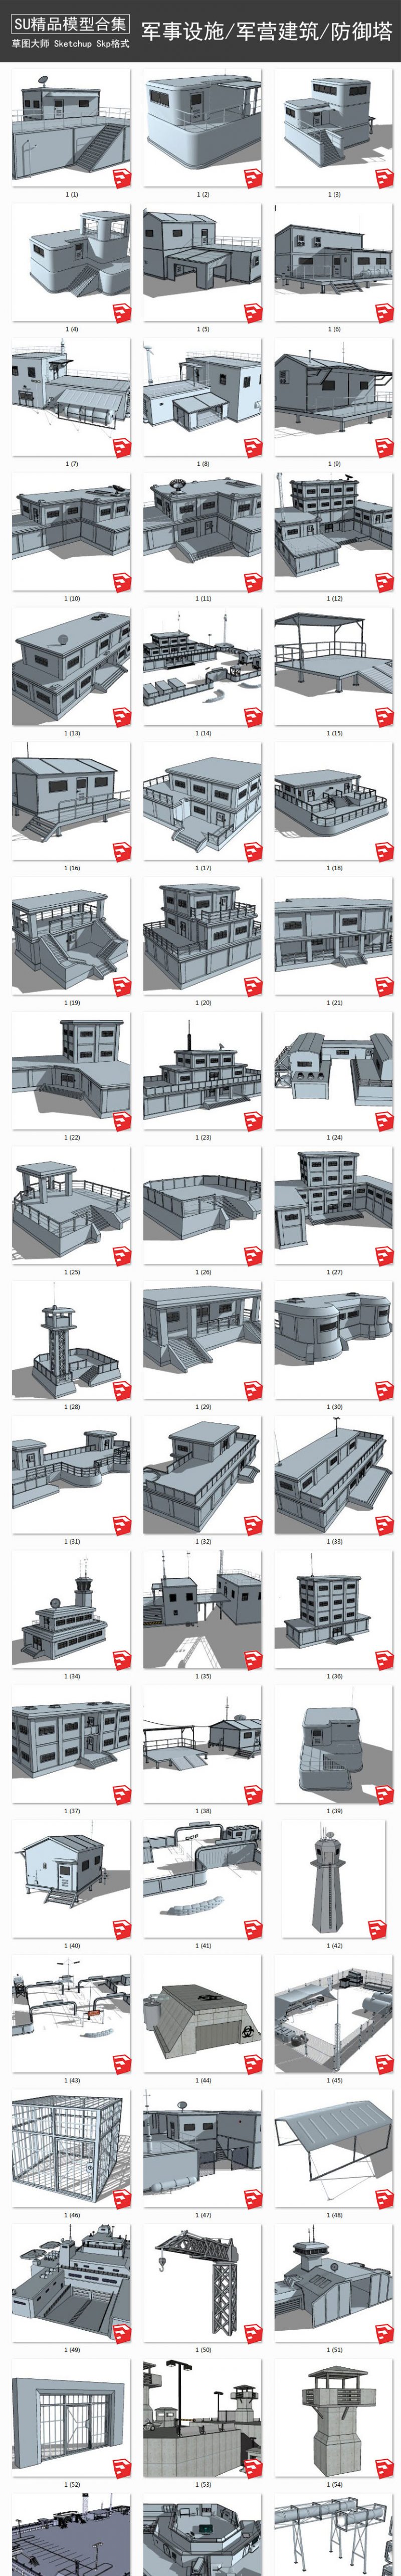 军事设施丨军营建筑丨防御塔 SU模型